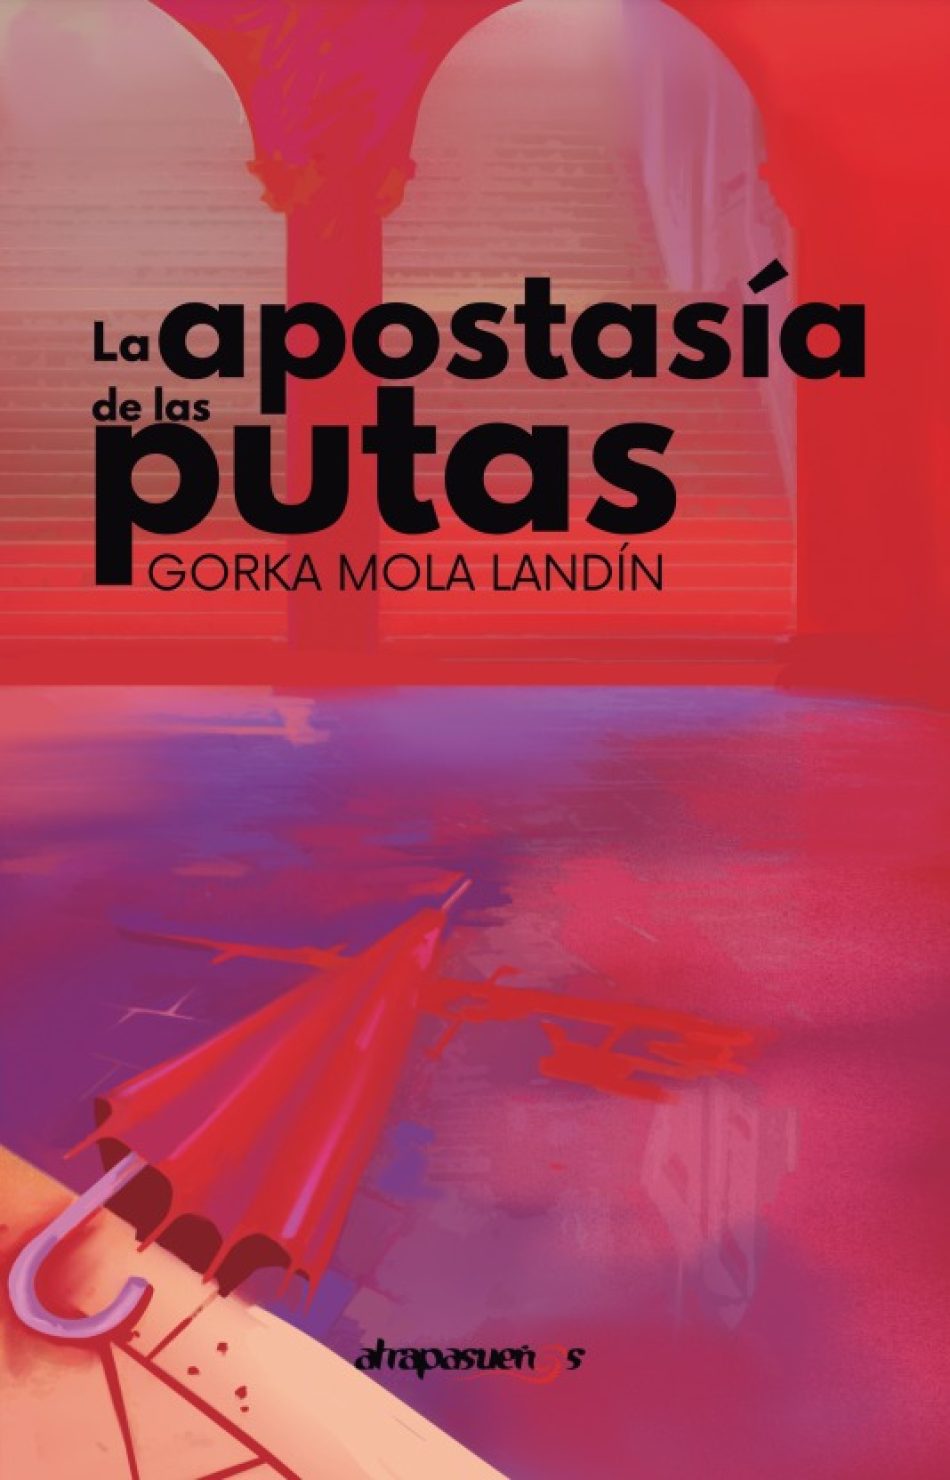 El bilbaíno Gorka Mola Ladín publica «La apostasía de las putas», una novela feminista con la que inicia una trilogía